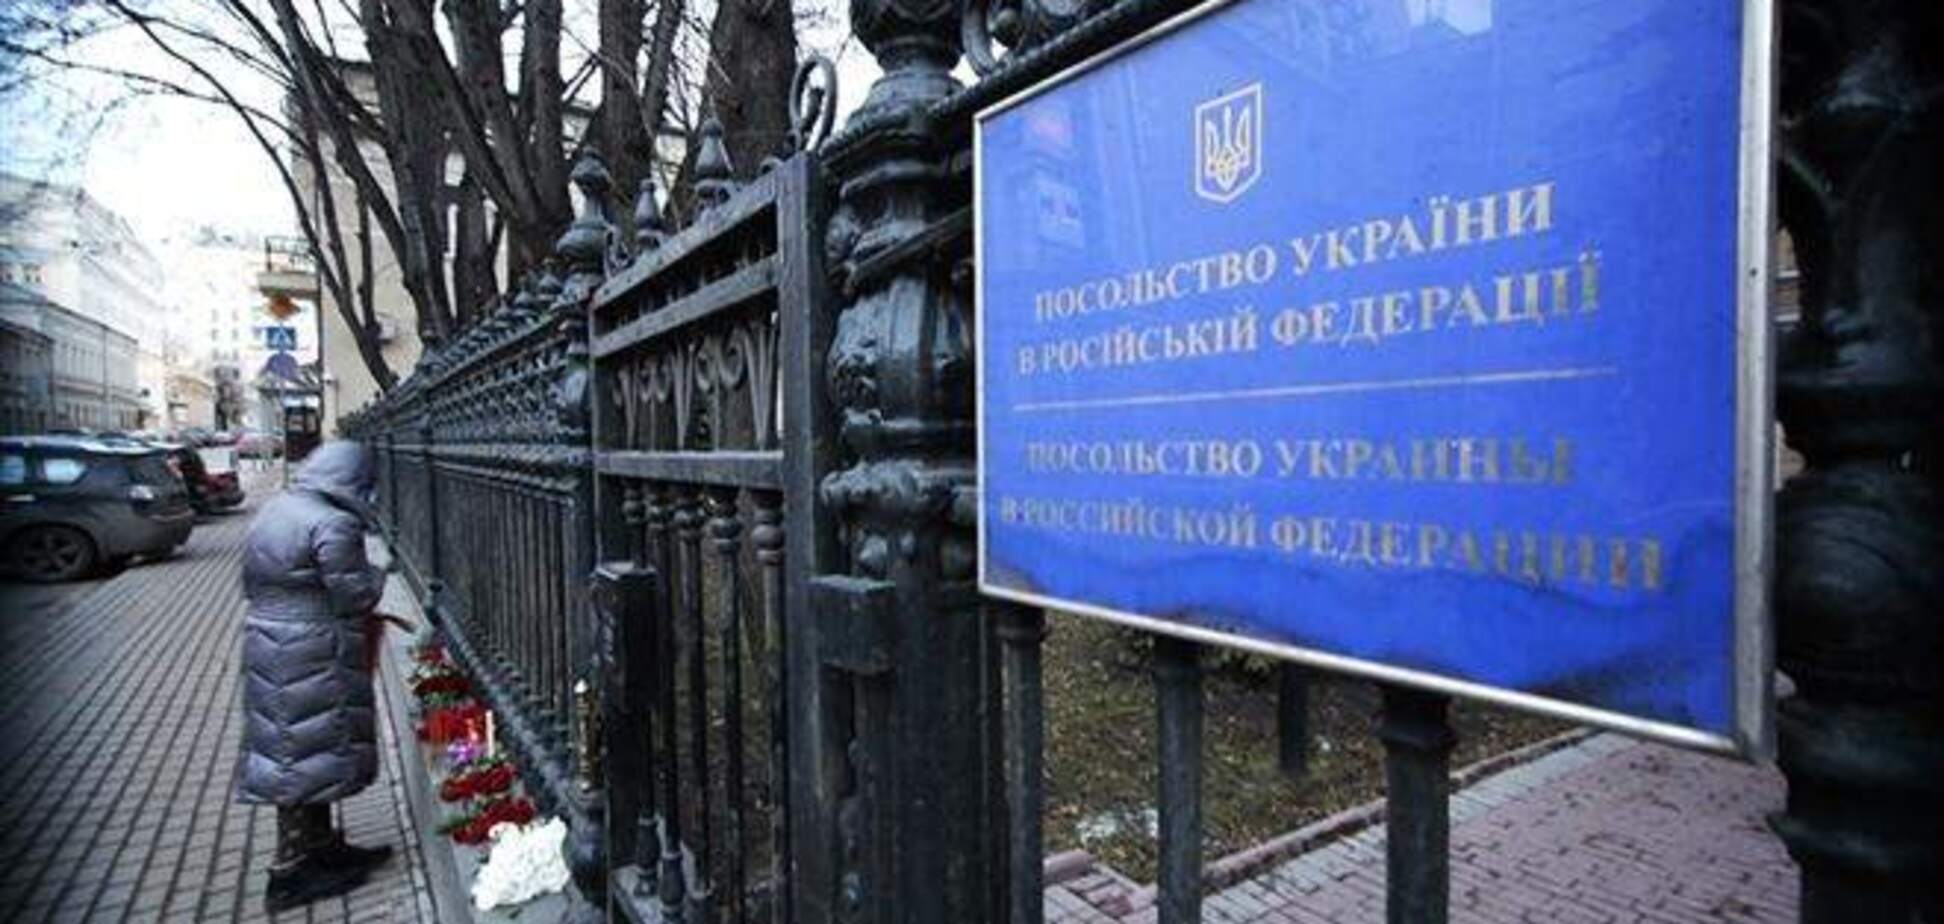 Посольство Украины в России срочно эвакуируют